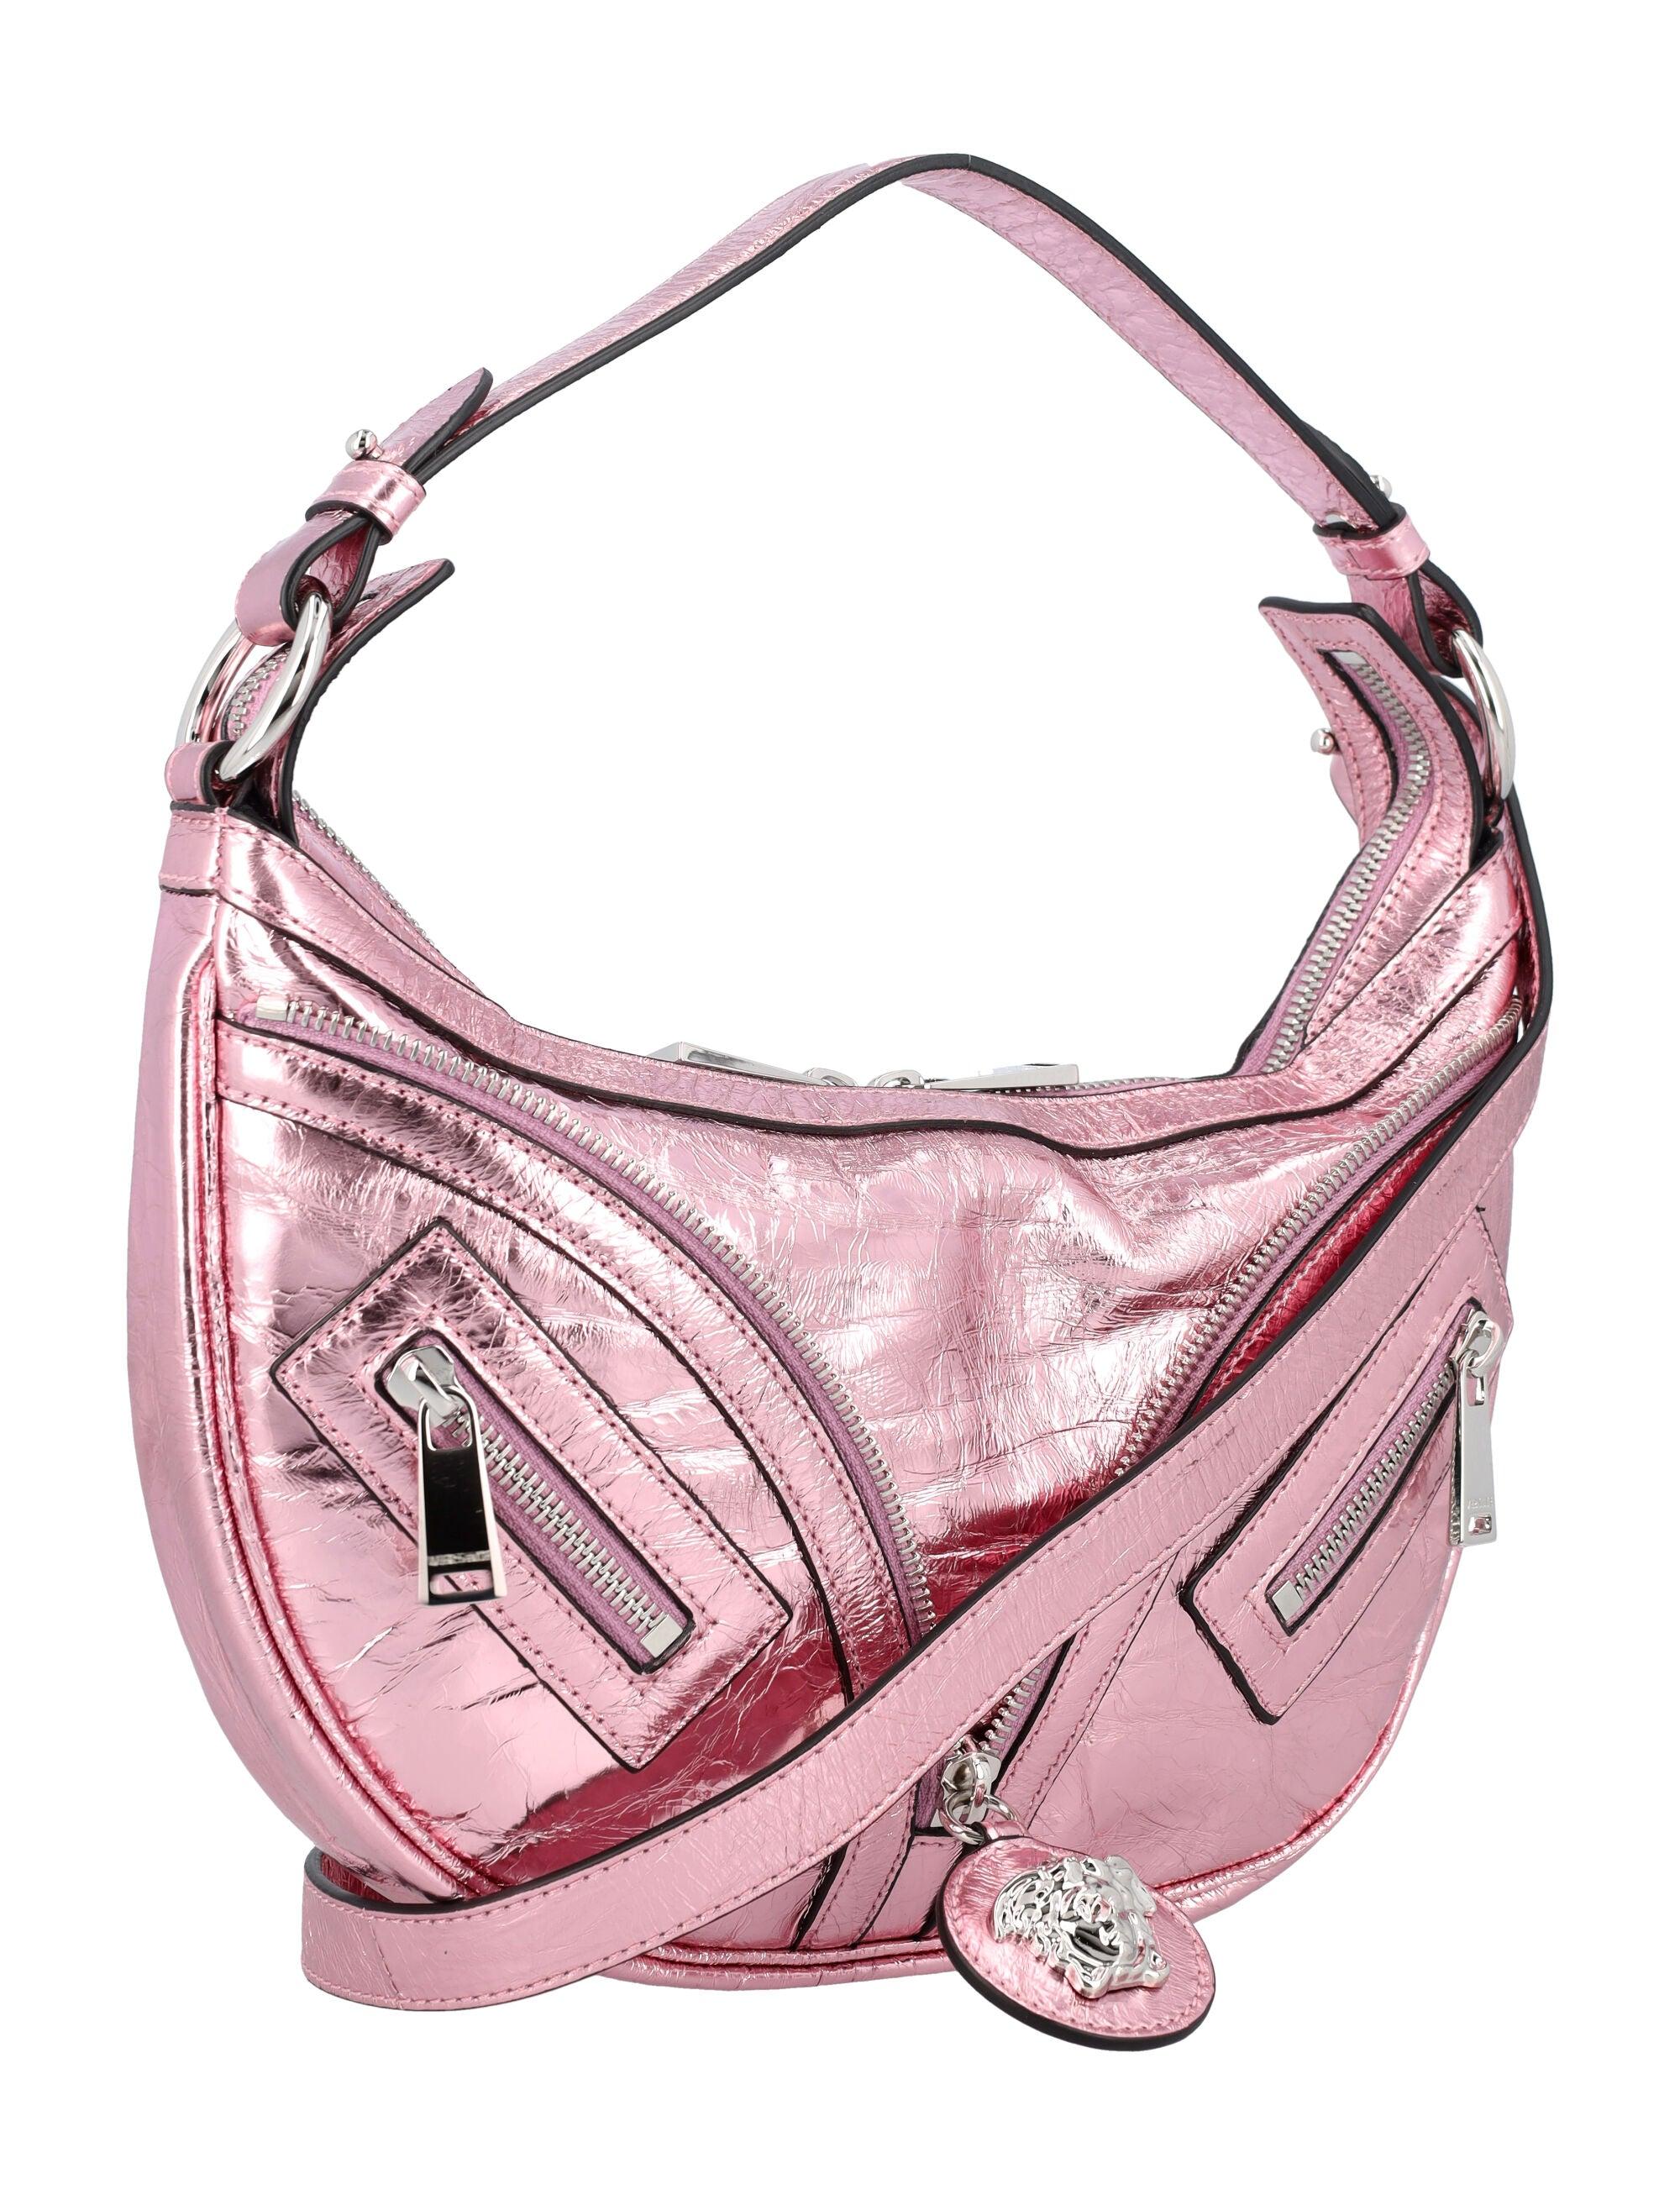 Versace Women's Metallic Repeat Small Hobo Bag in Pink